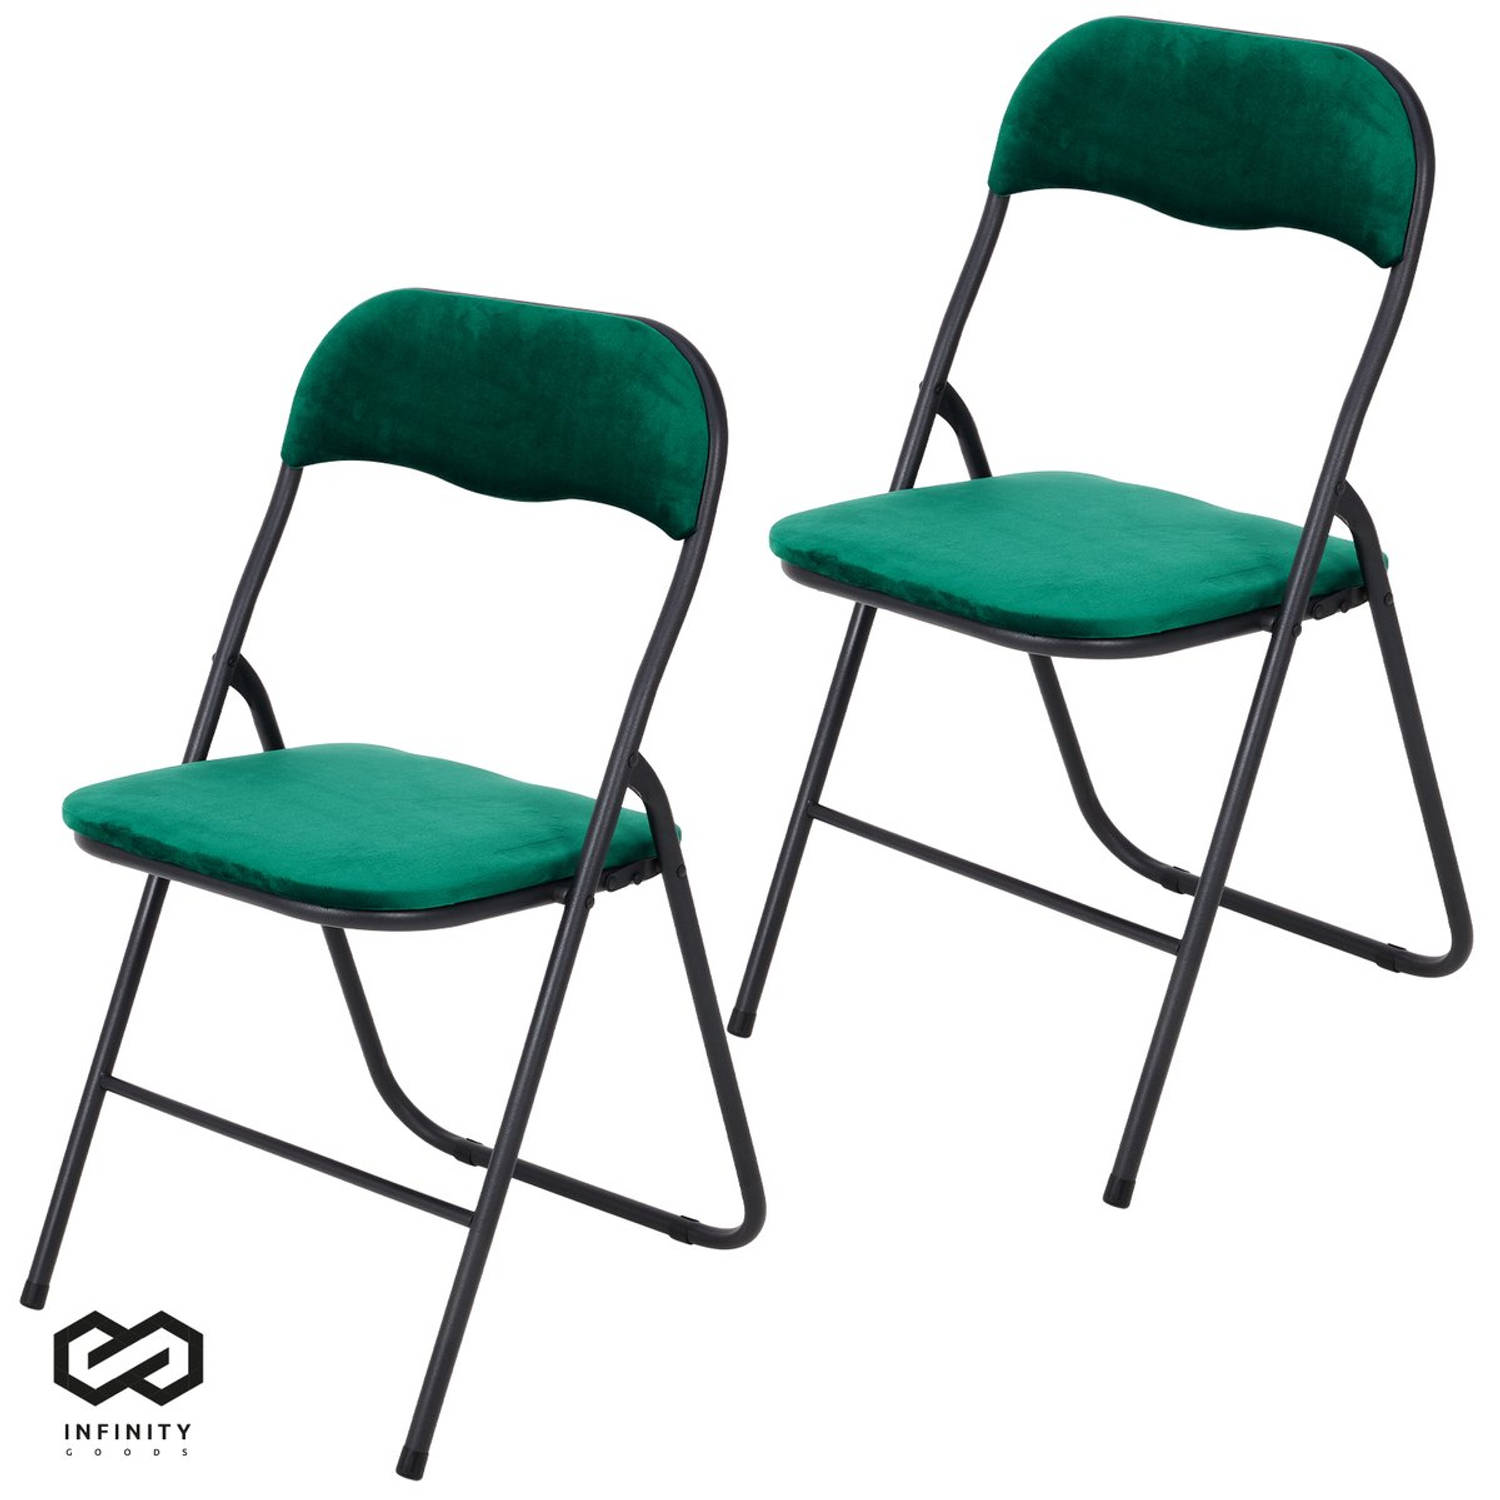 Infinity Goods Klapstoelen - Set van 2 - Vouwstoelen - Fluweel - Eettafelstoelen - Opklapbare Stoelen - 43 x 47 x 80 CM - Stoelen - Groen